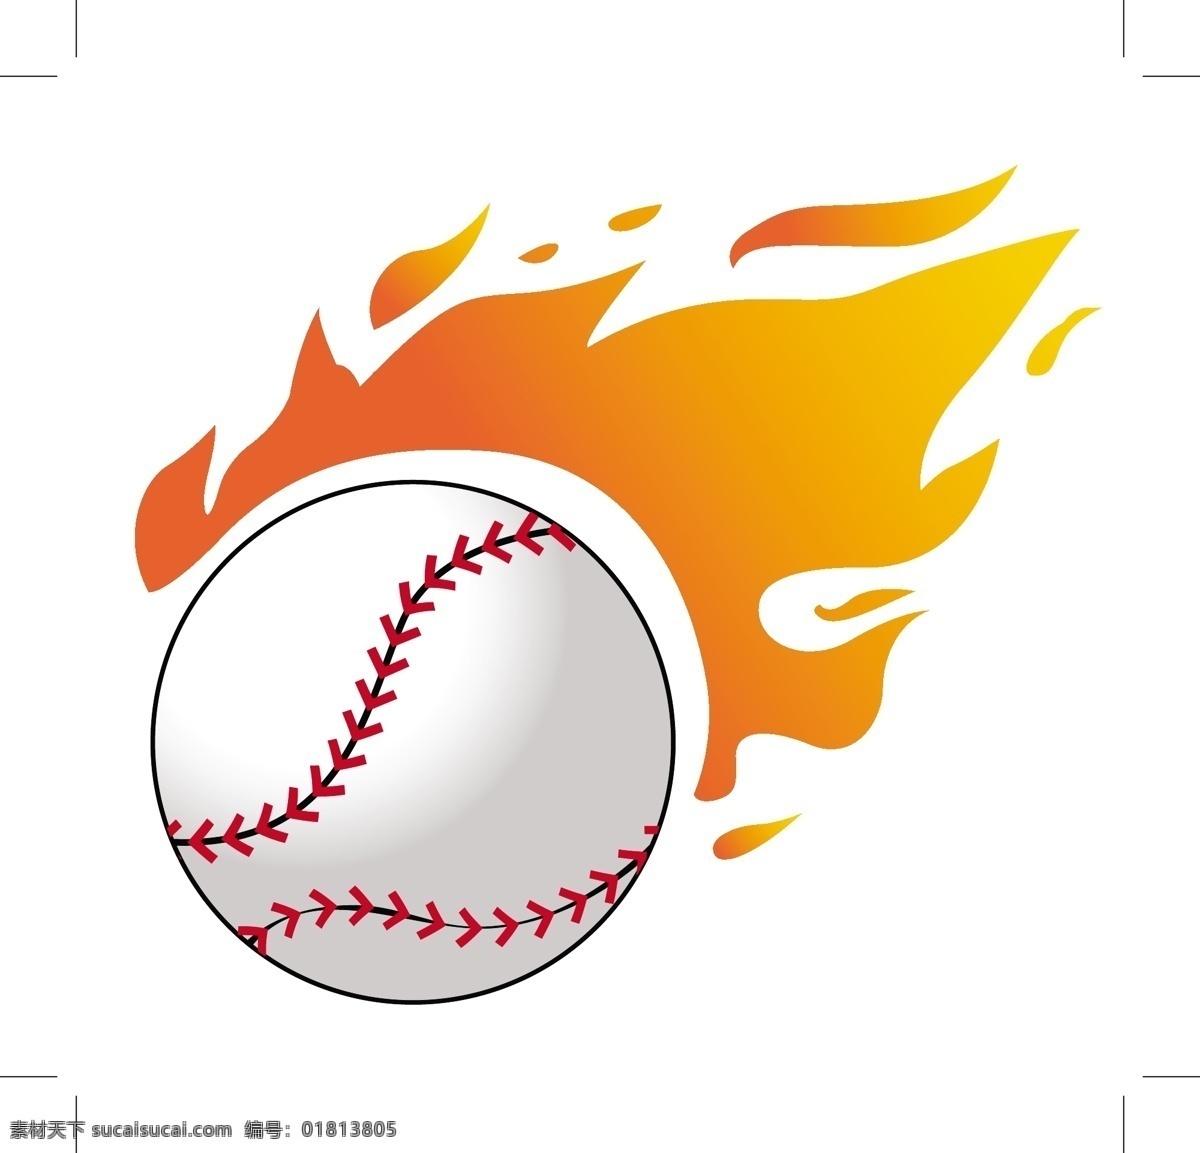 火焰 矢量 棒球 商业矢量 矢量下载 网页矢量 矢量综合 矢量图 其他矢量图